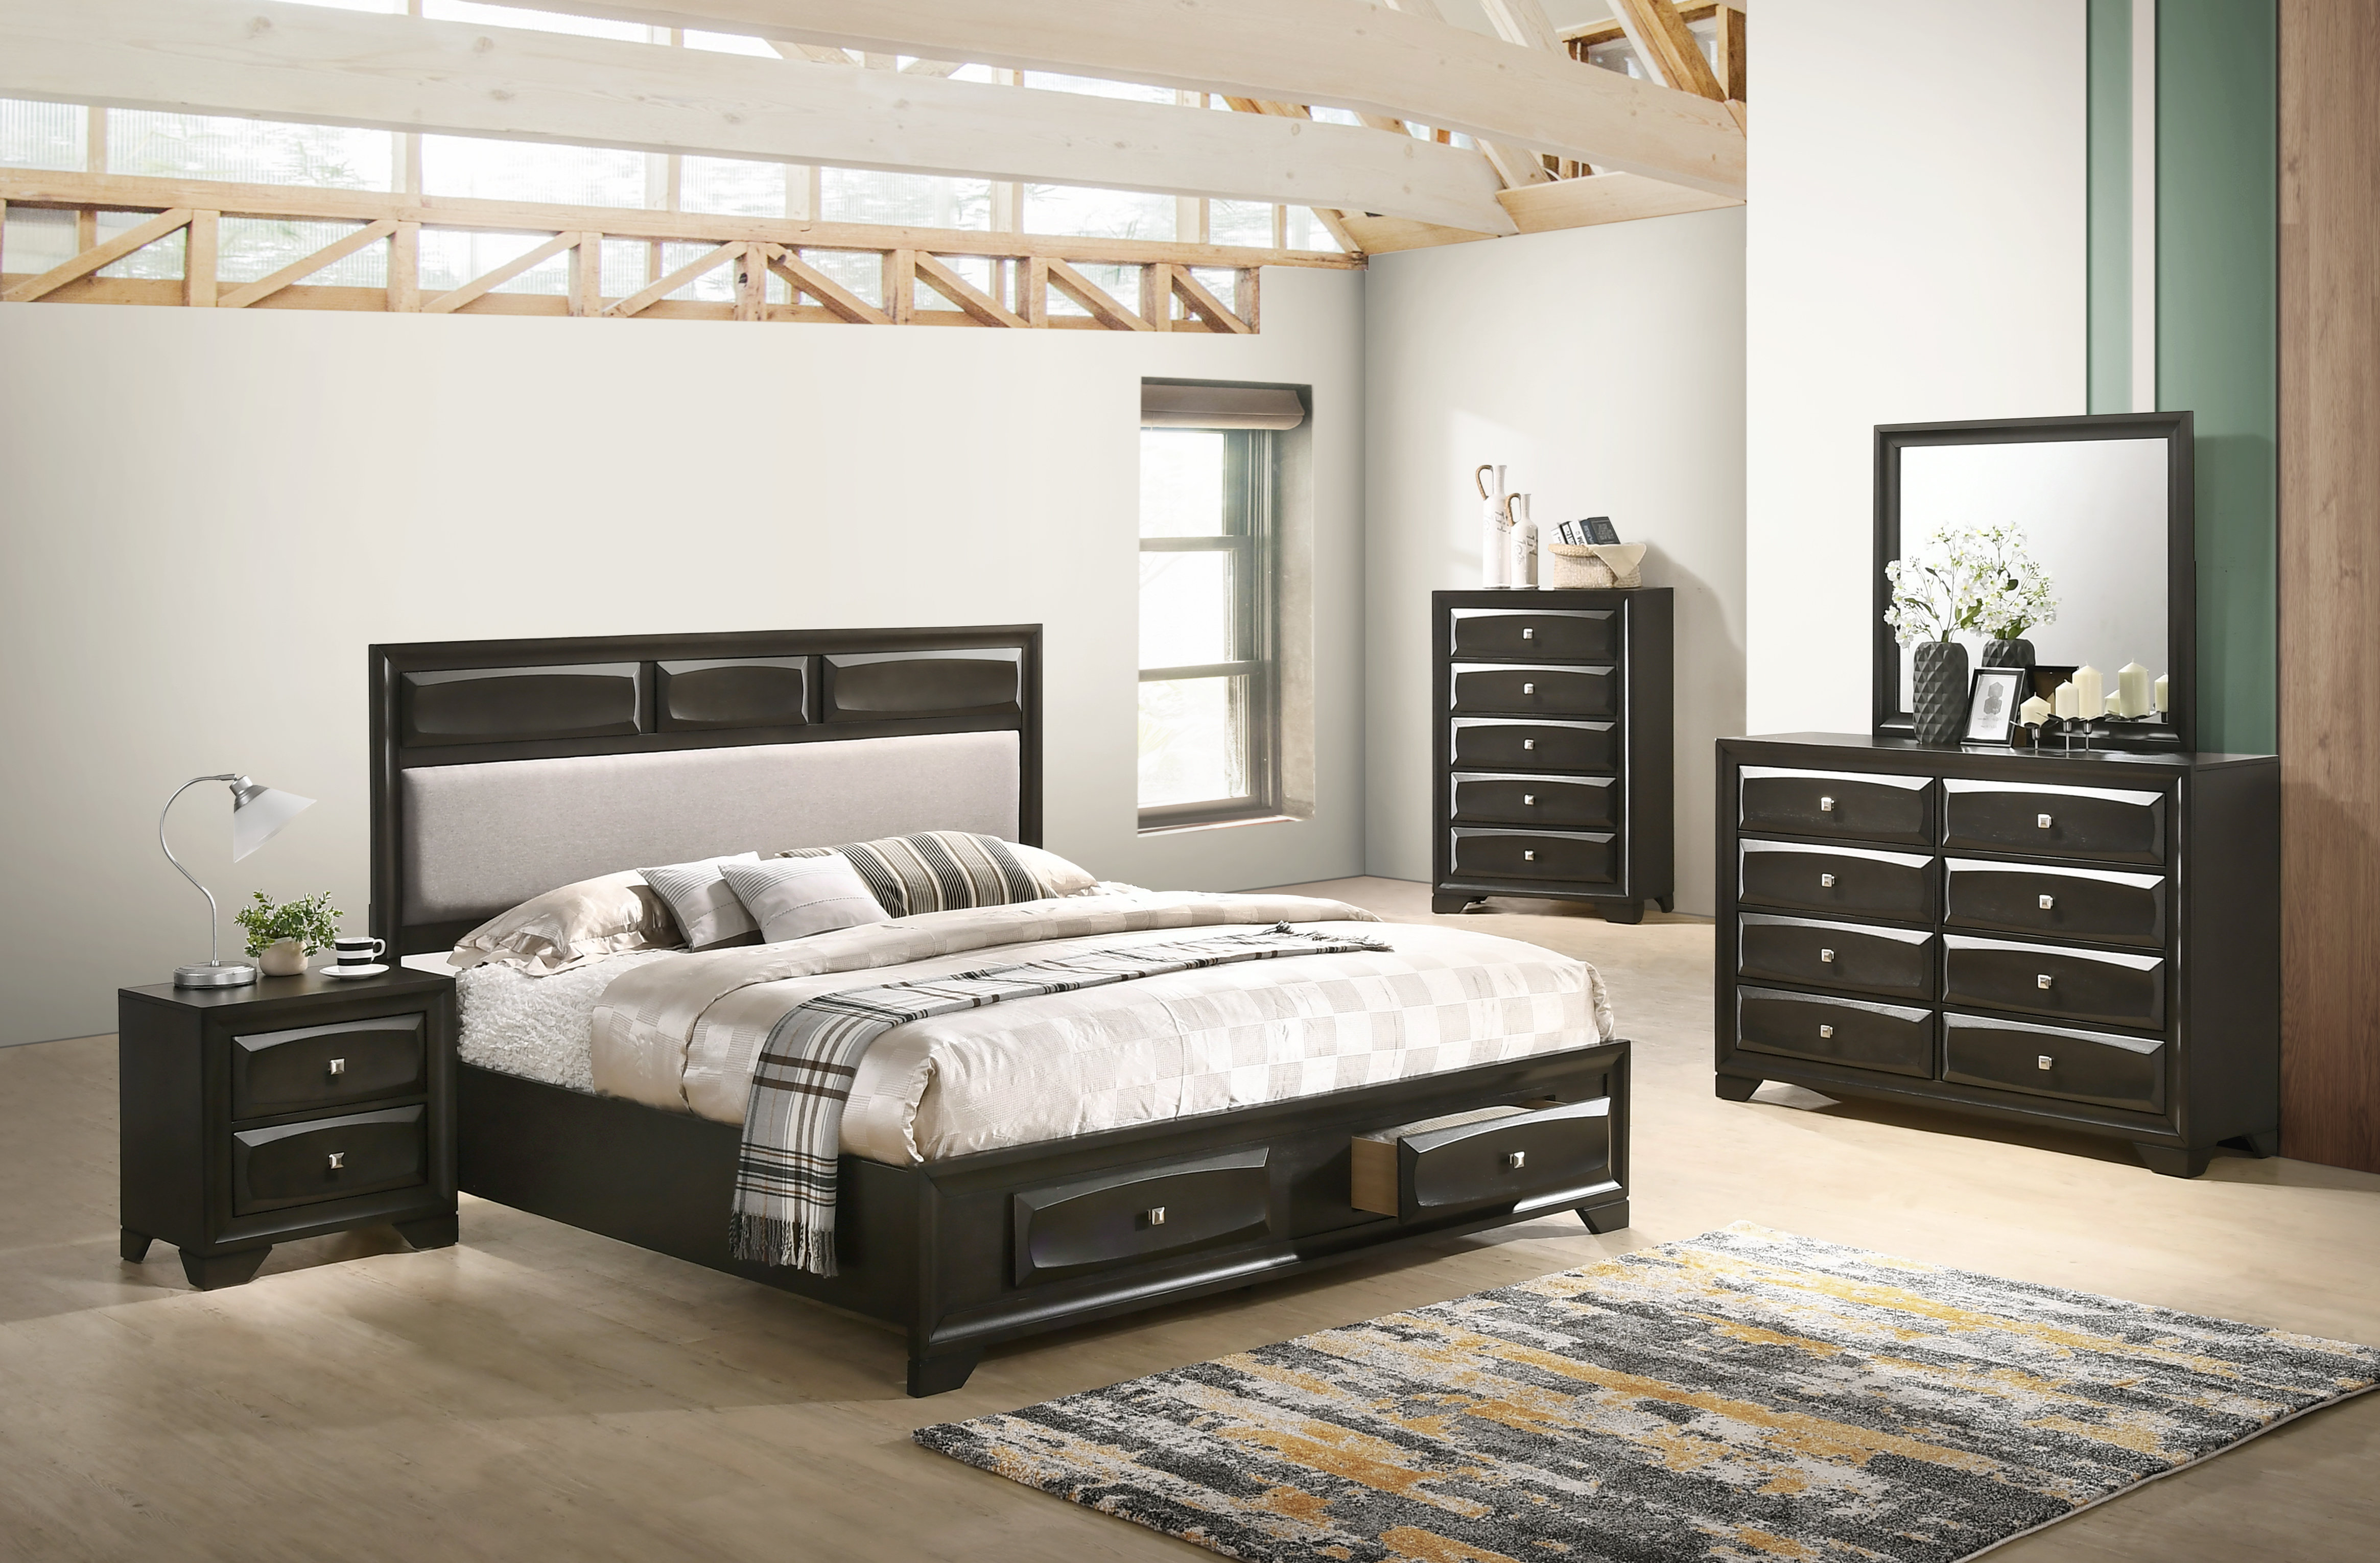 Beagan Platform 5 Piece Bedroom Set regarding size 4659 X 3060